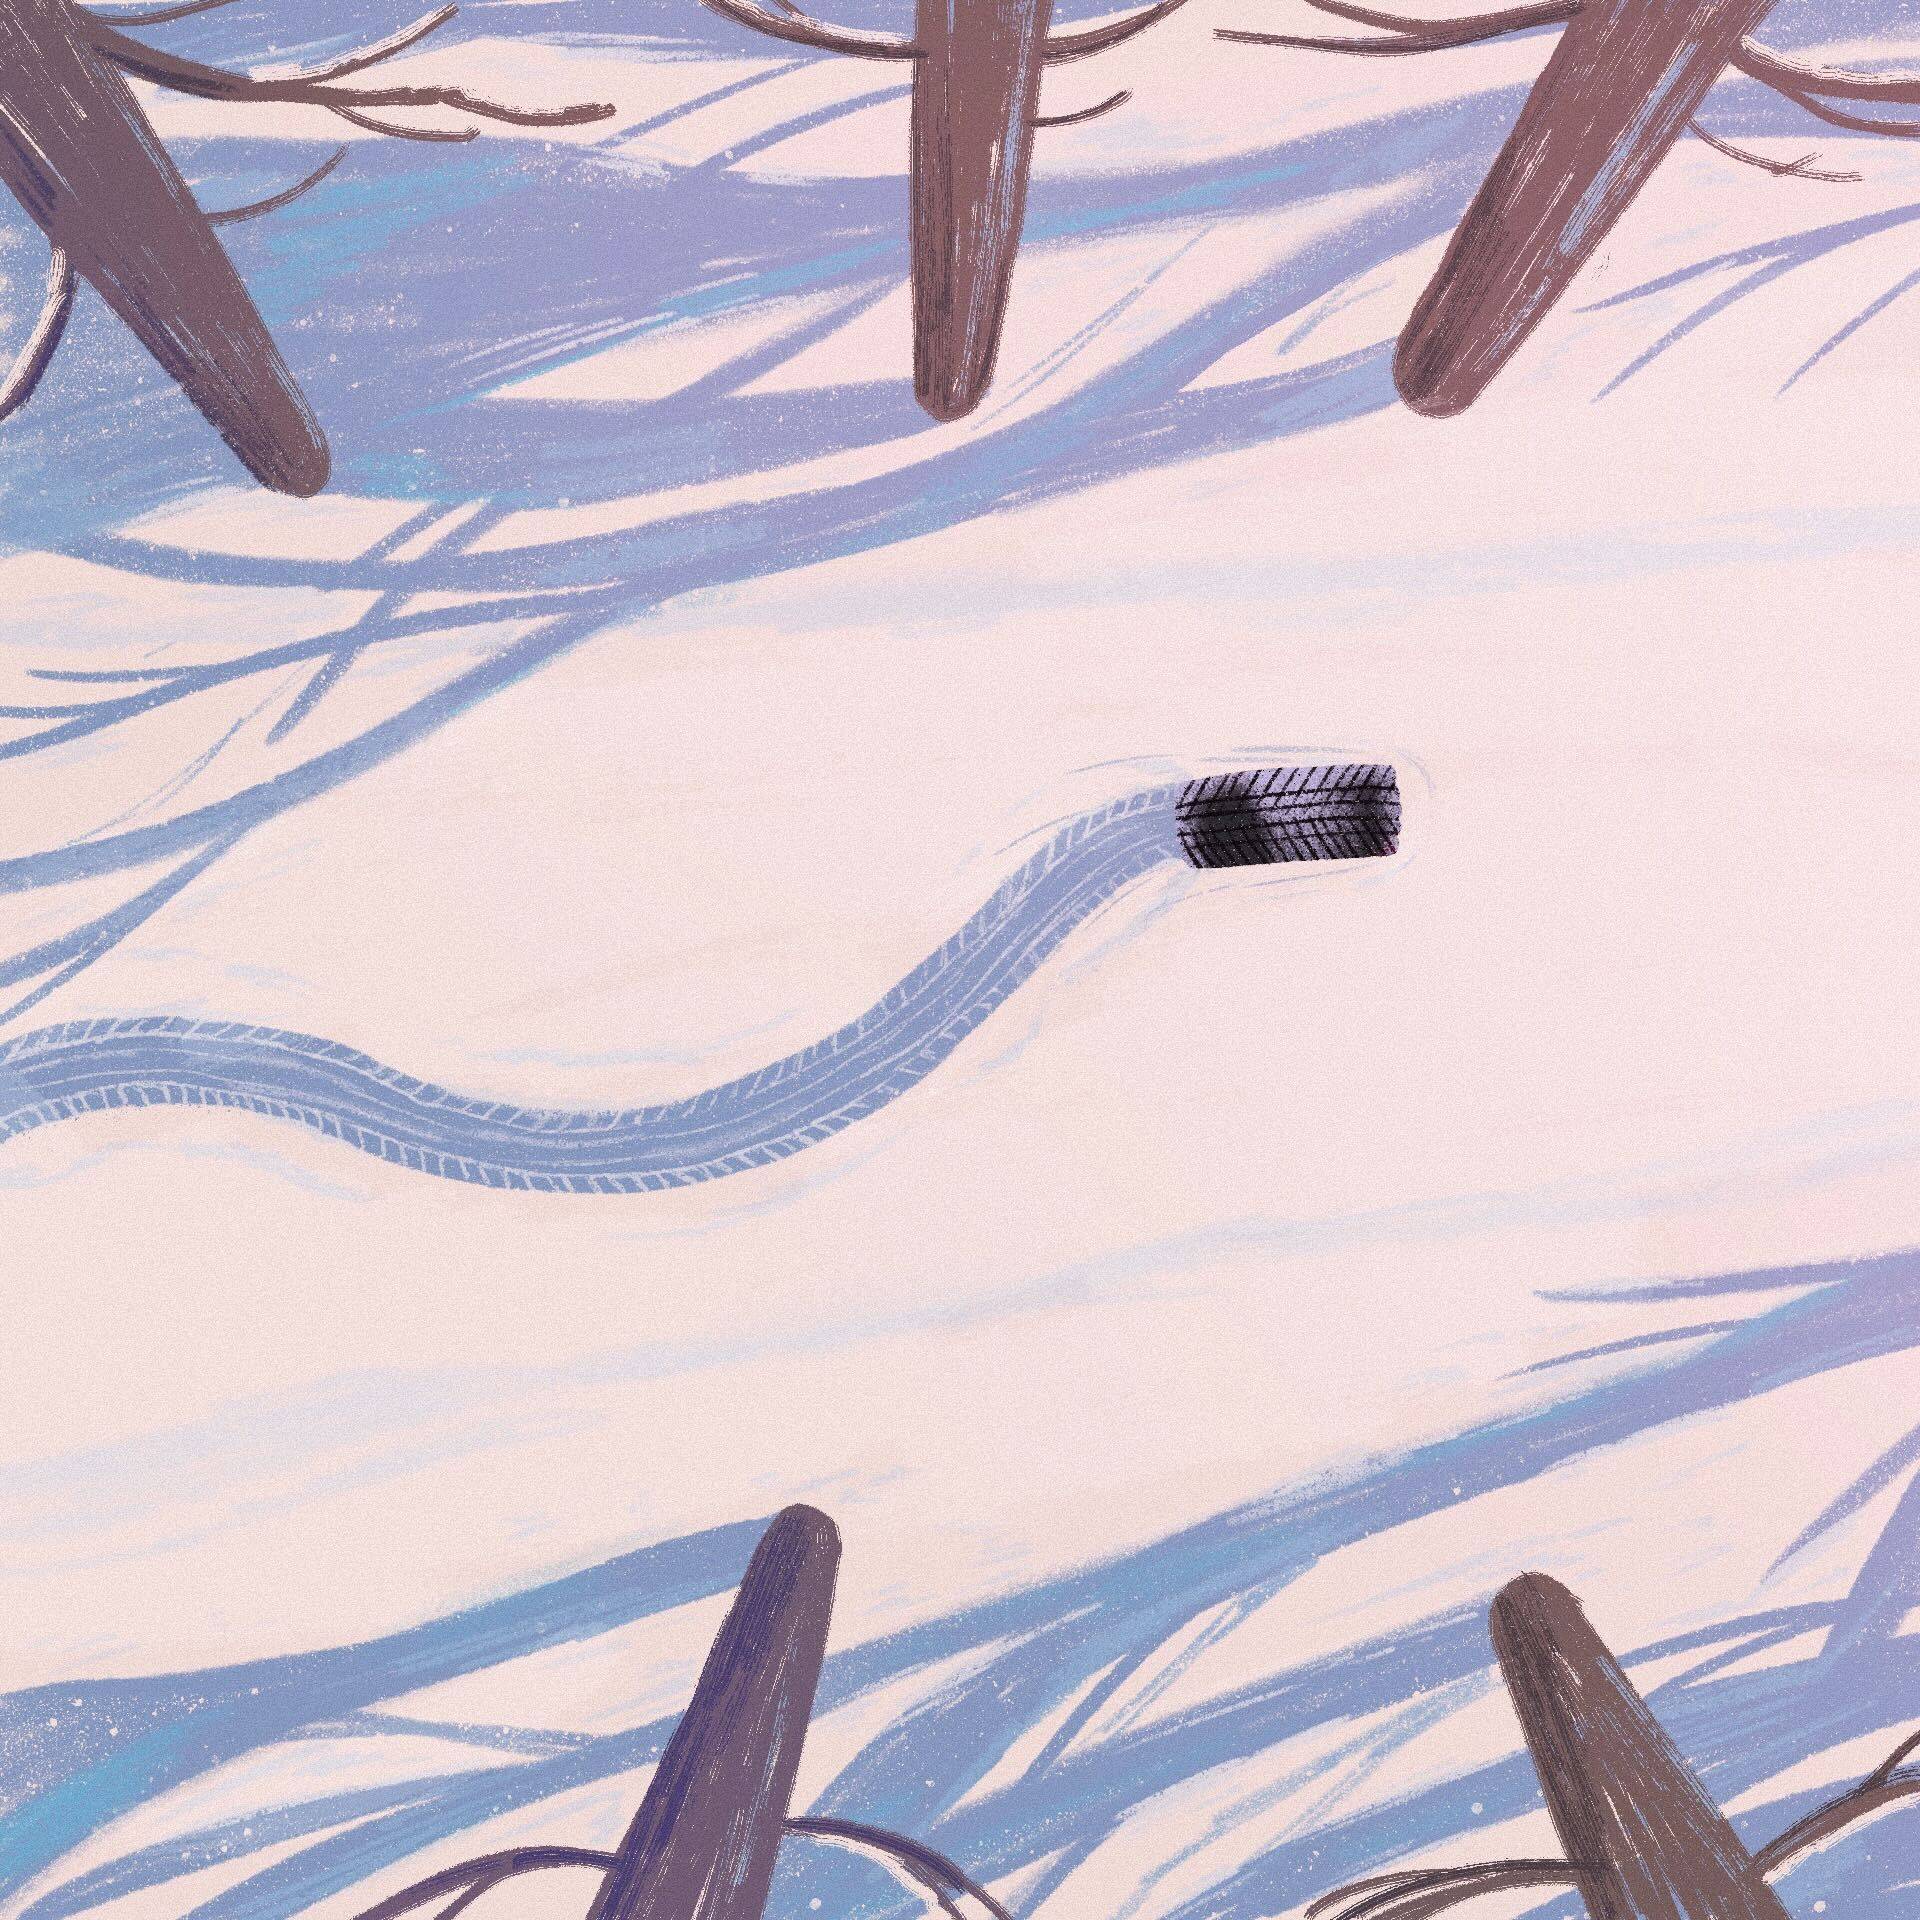 Rysunek prtzedstawia zasypany śniegiem las i toczące sie po śniego czarne koło samochodowe